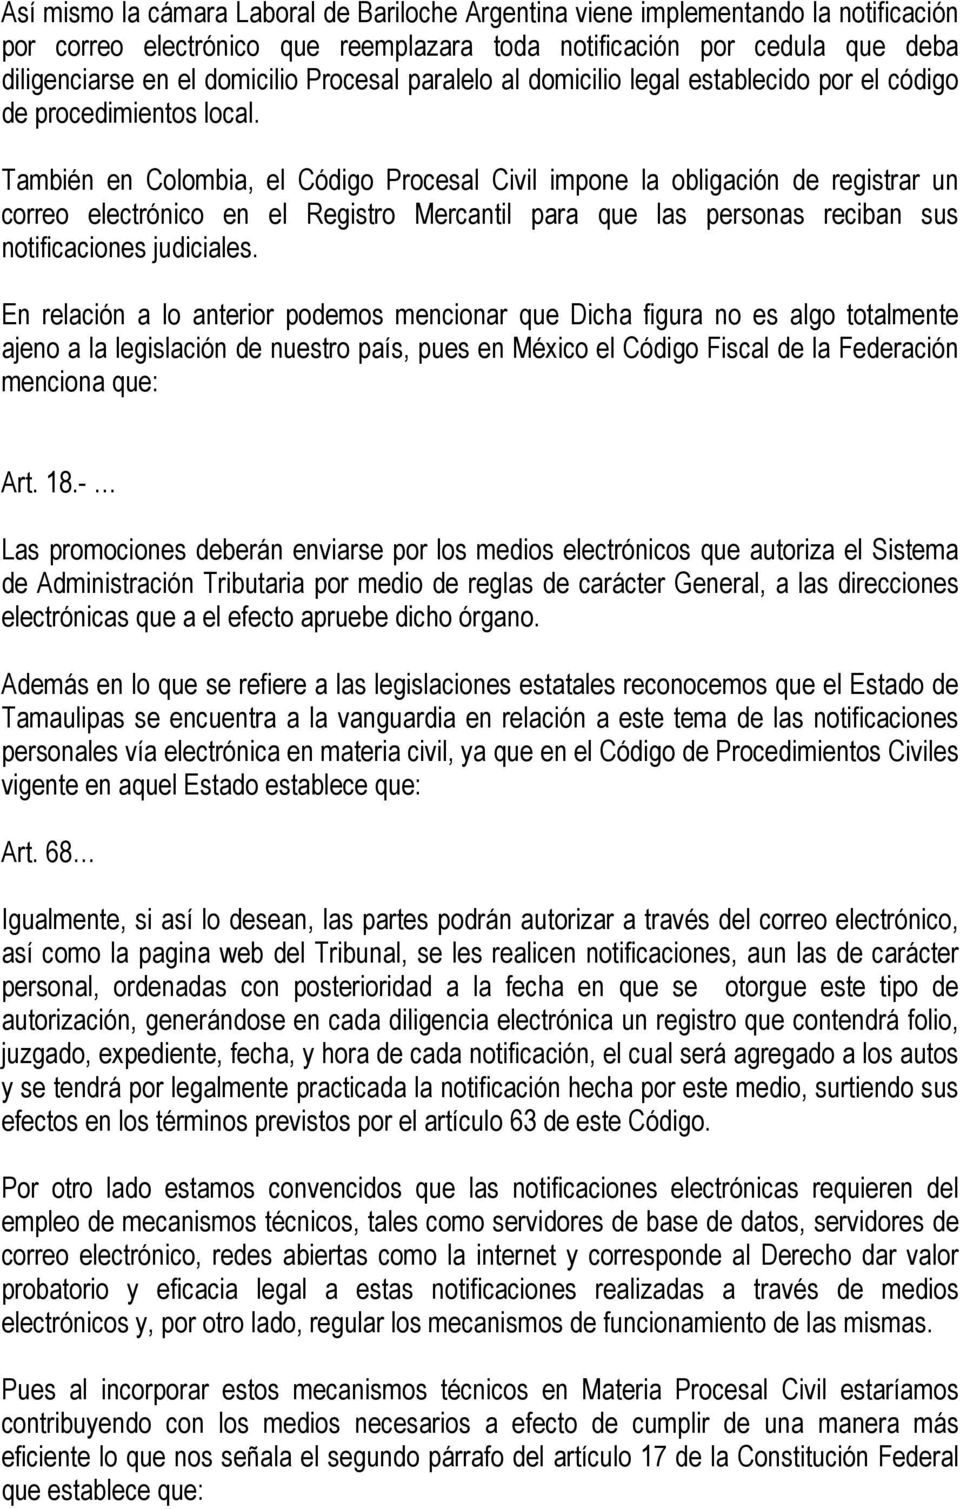 También en Colombia, el Código Procesal Civil impone la obligación de registrar un correo electrónico en el Registro Mercantil para que las personas reciban sus notificaciones judiciales.